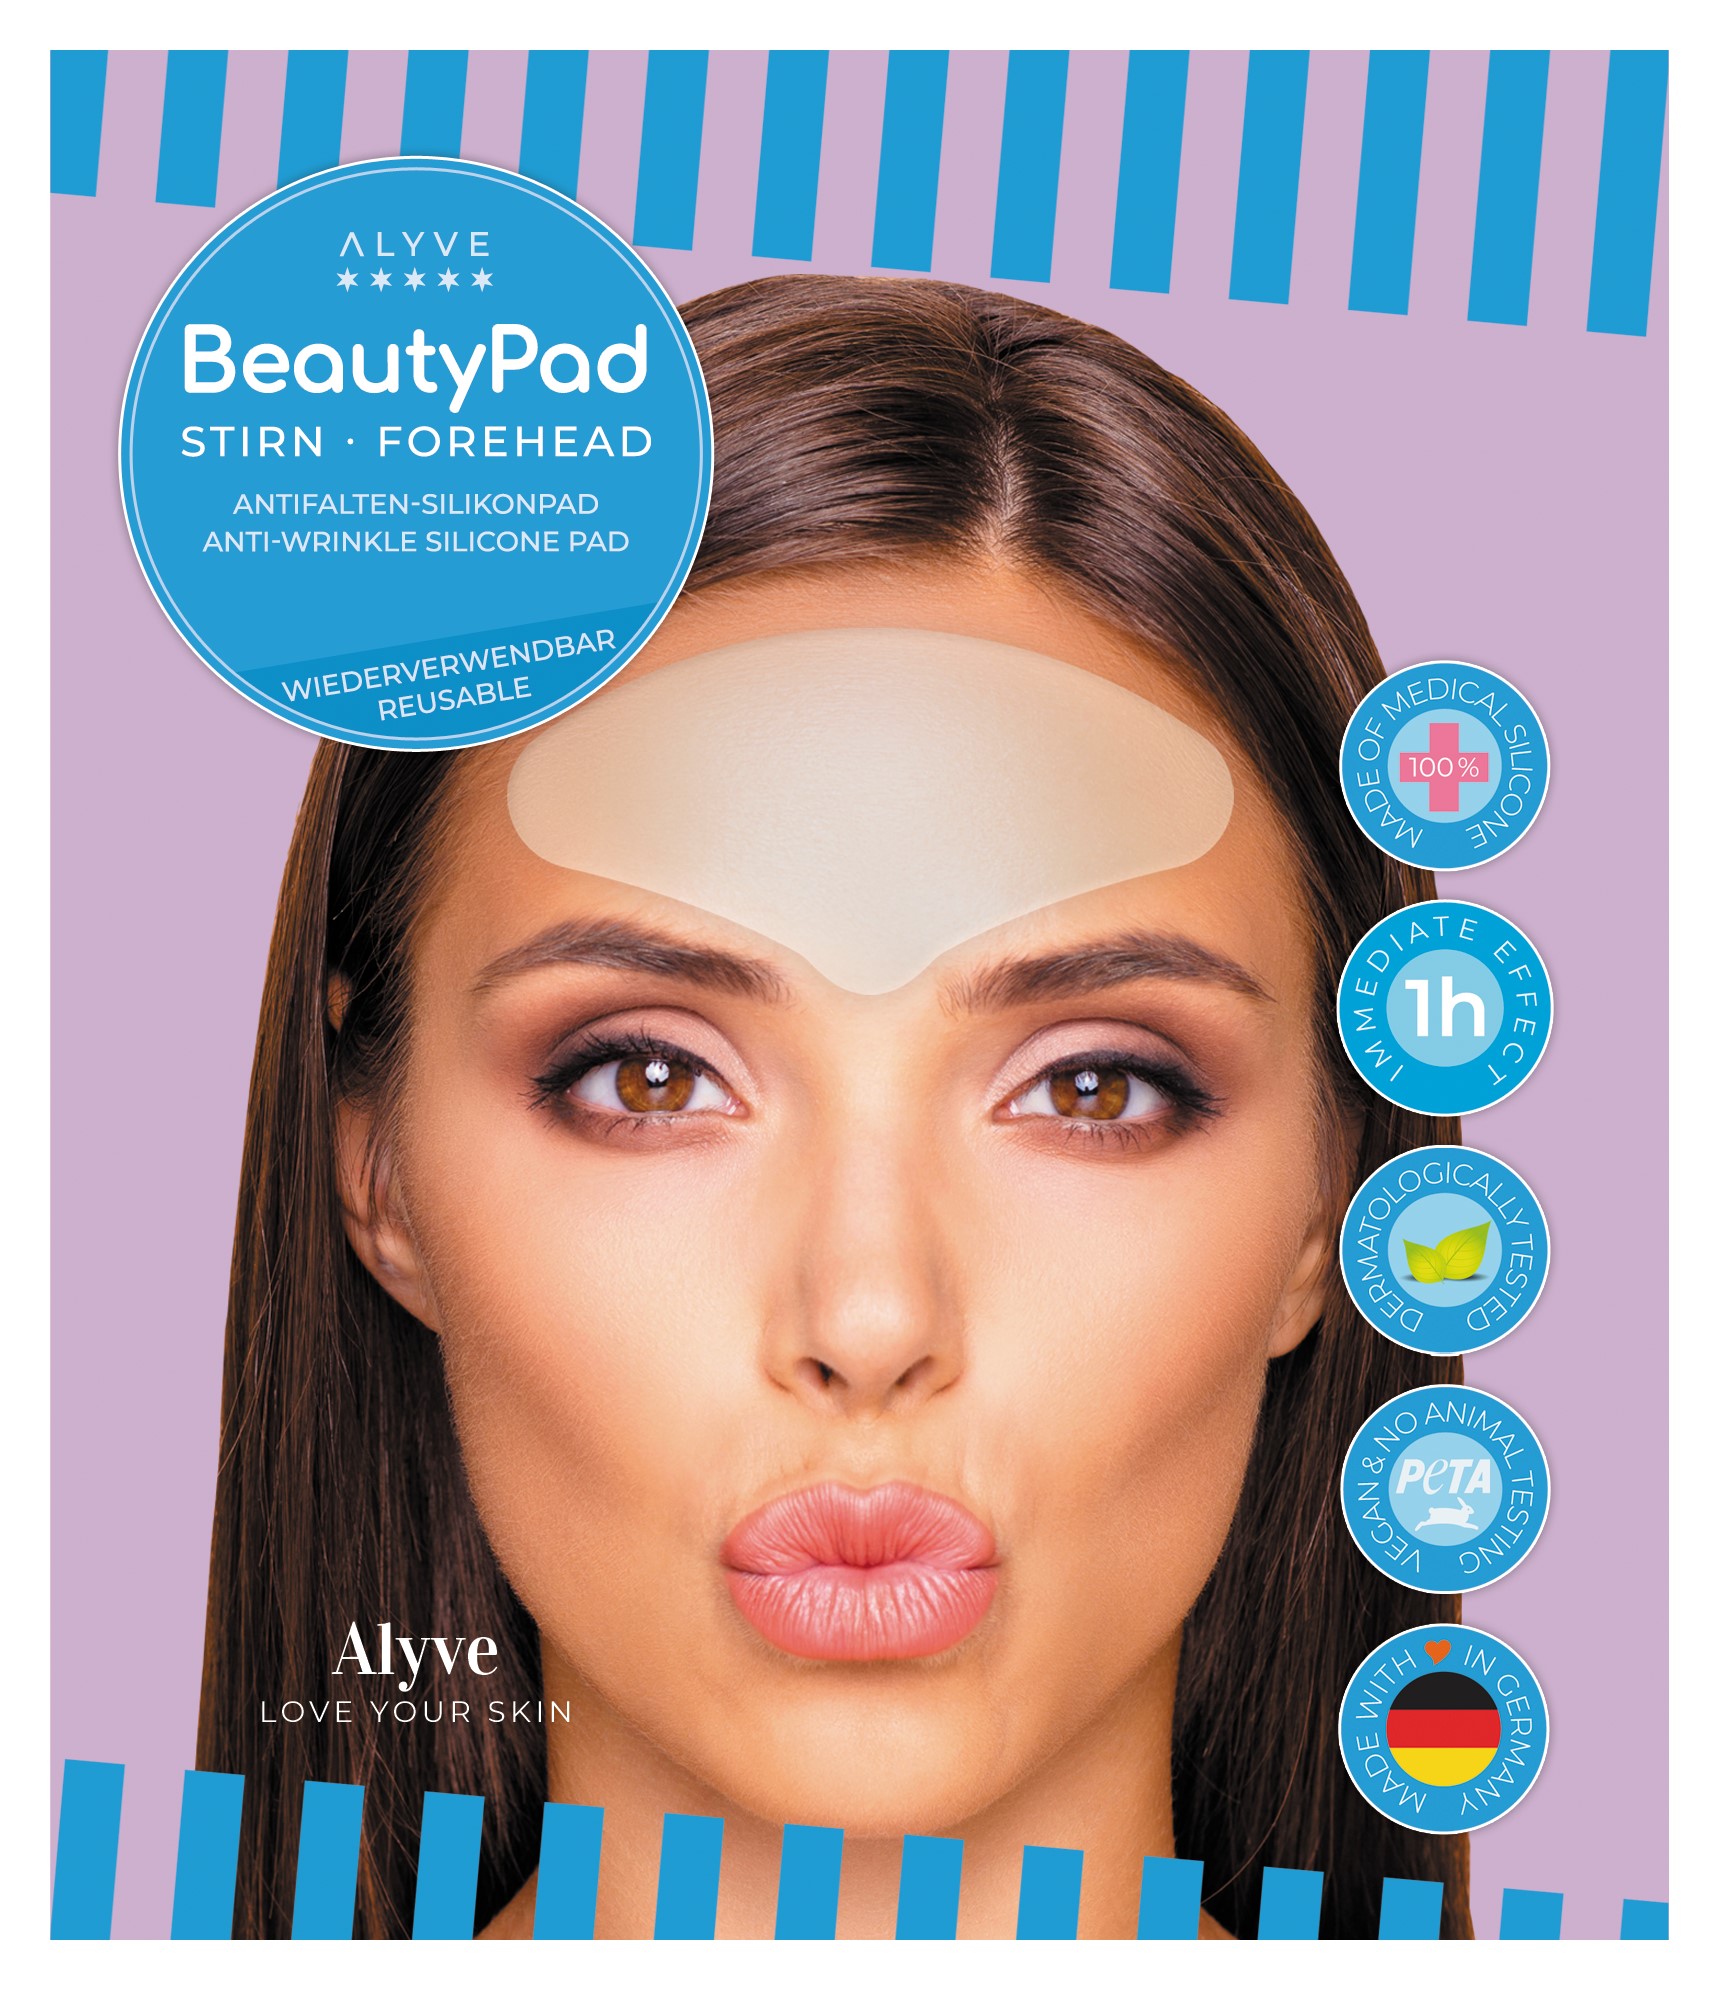 Alyve BeautyPad STIRN Antifalten-Silikonpad – Alyve Beauty Berlin